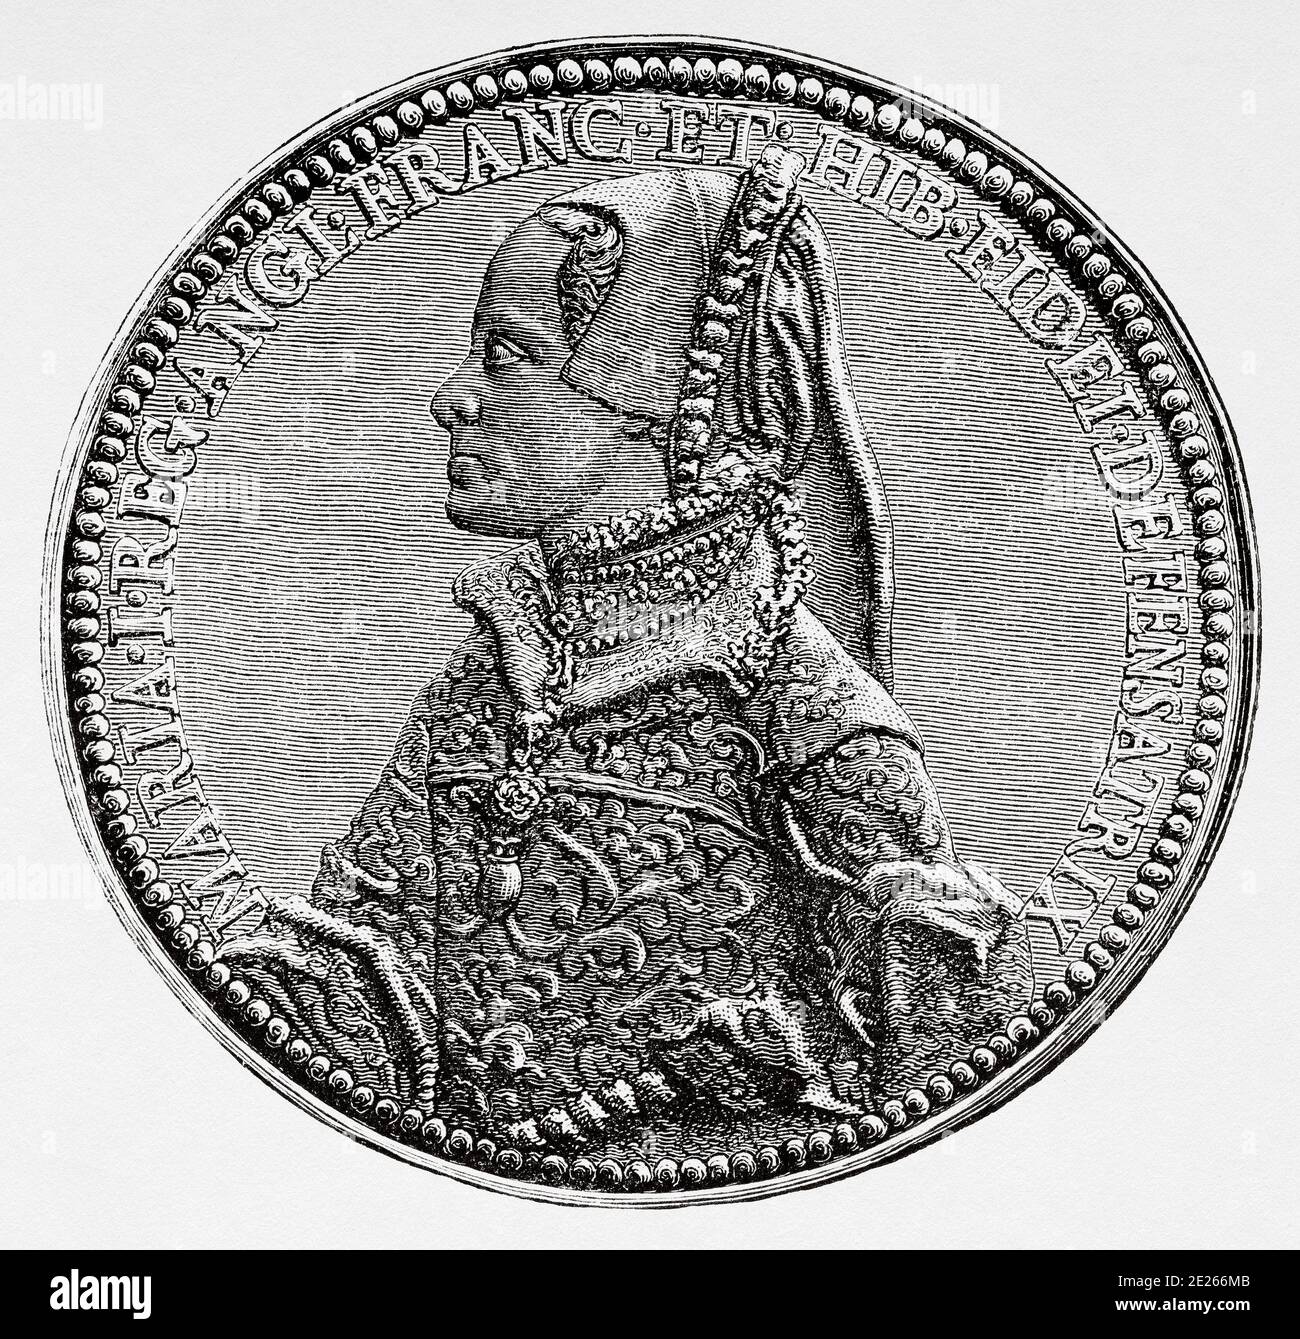 Portrait Medaillensiegel von Maria I. (18. Februar 1516 - 17. November 1558) war Königin von England und Irland. Genannt Bloody Mary. Geschichte von Philipp II. Von Spanien. Alter Stich veröffentlicht in Historia de Felipe II von H. Forneron, im Jahr 1884 Stockfoto